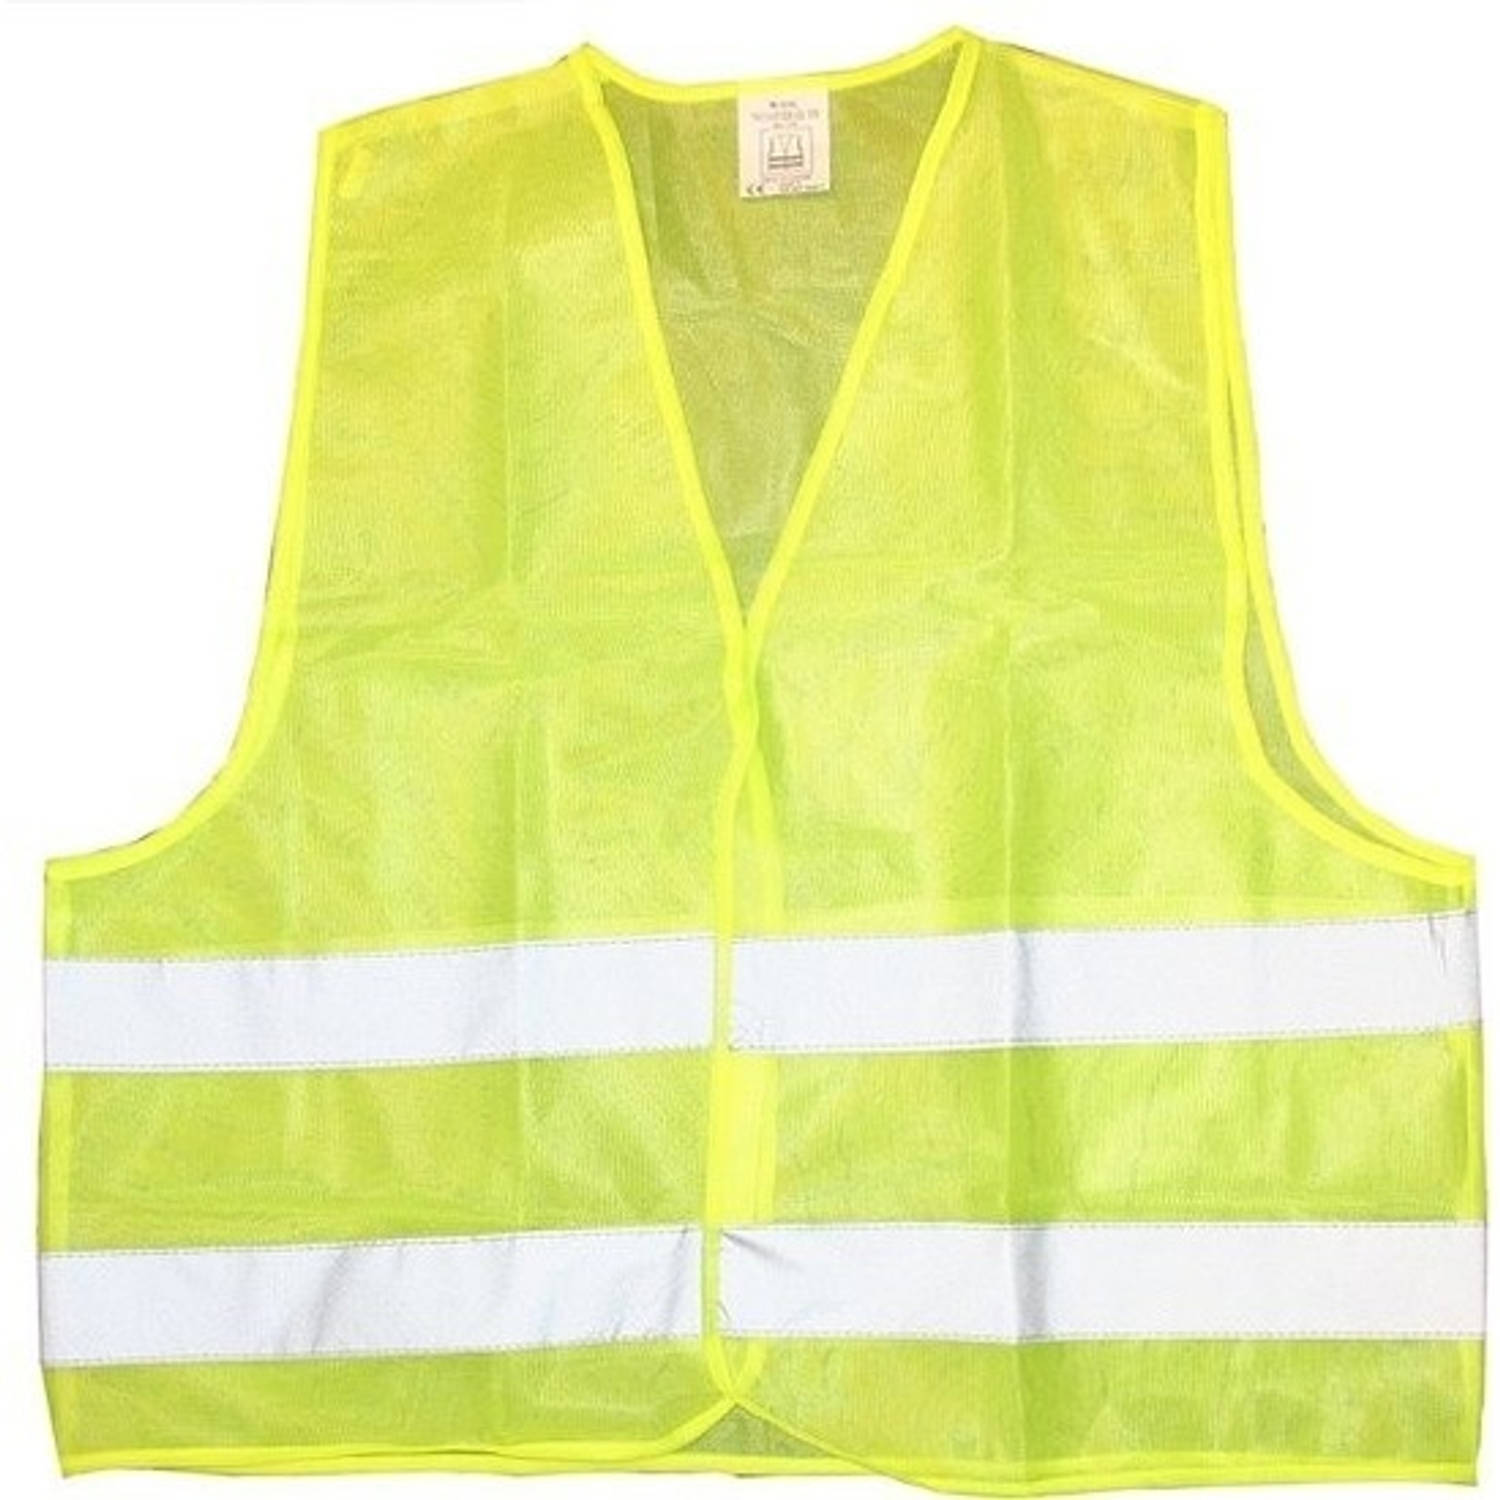 8x Veiligheidsvest fluorescerend geel voor volwassenen - Veiligheidshesje